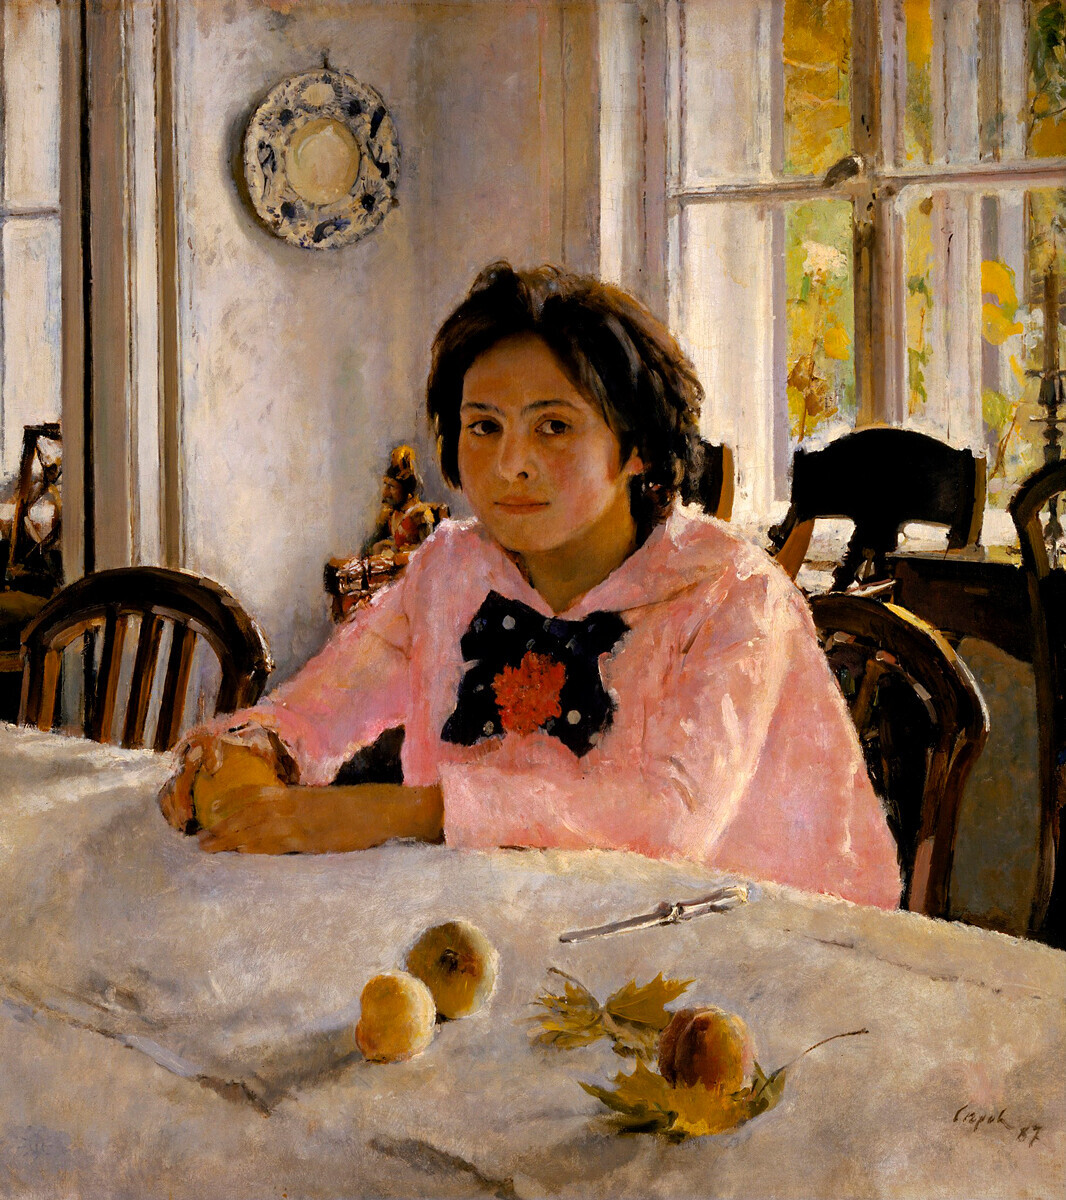 Valentin Serov, “La ragazza delle pesche”, 1887